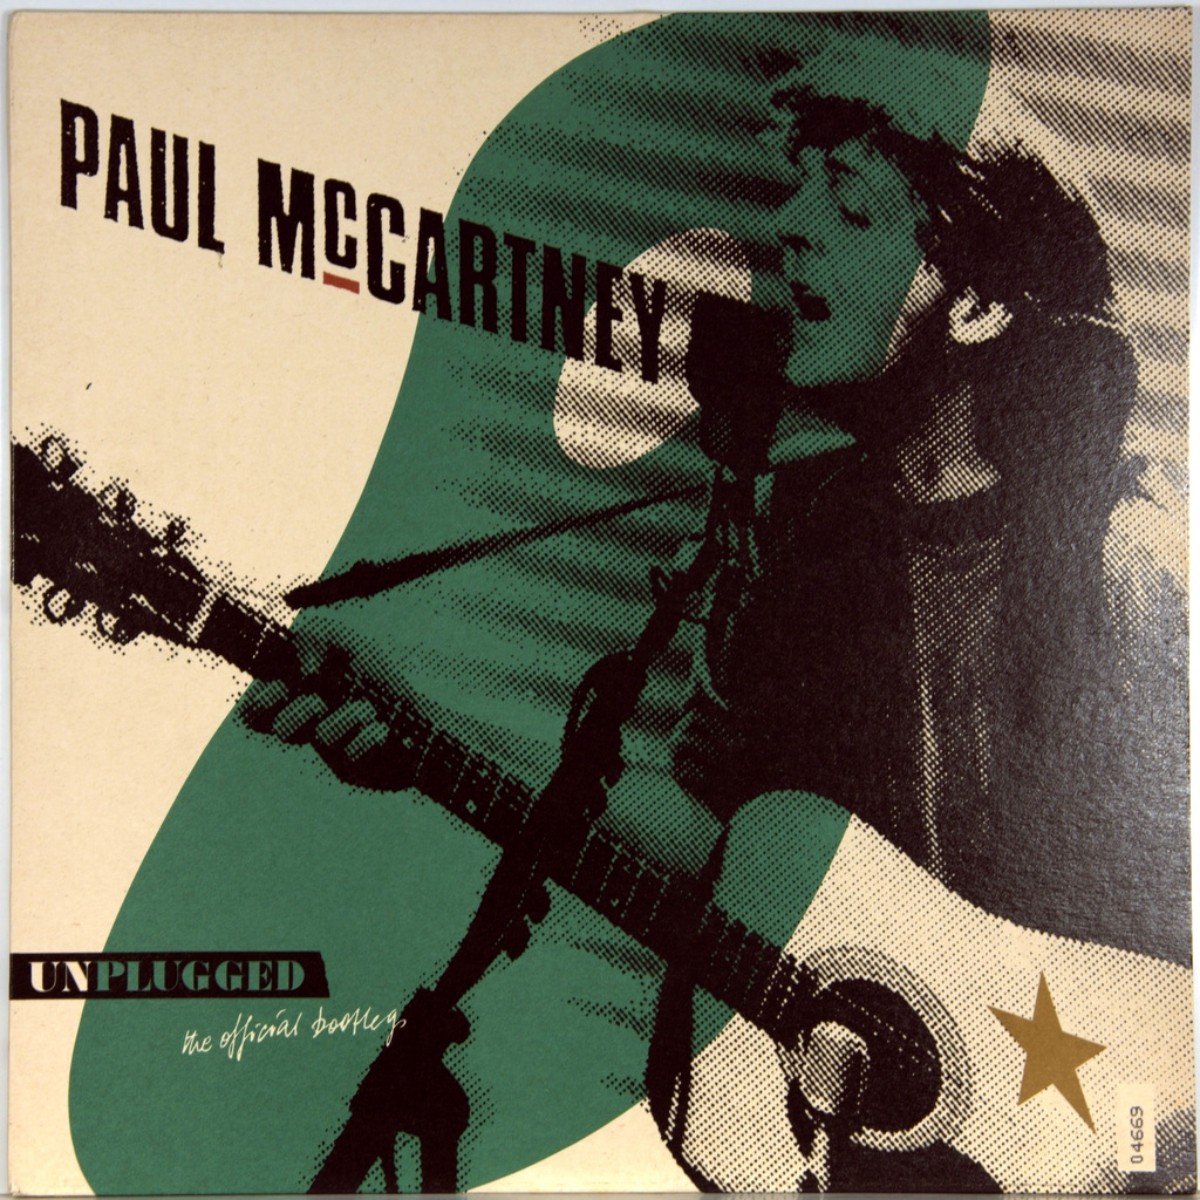 Desconectado (O Bootleg Oficial) por Paul McCartney